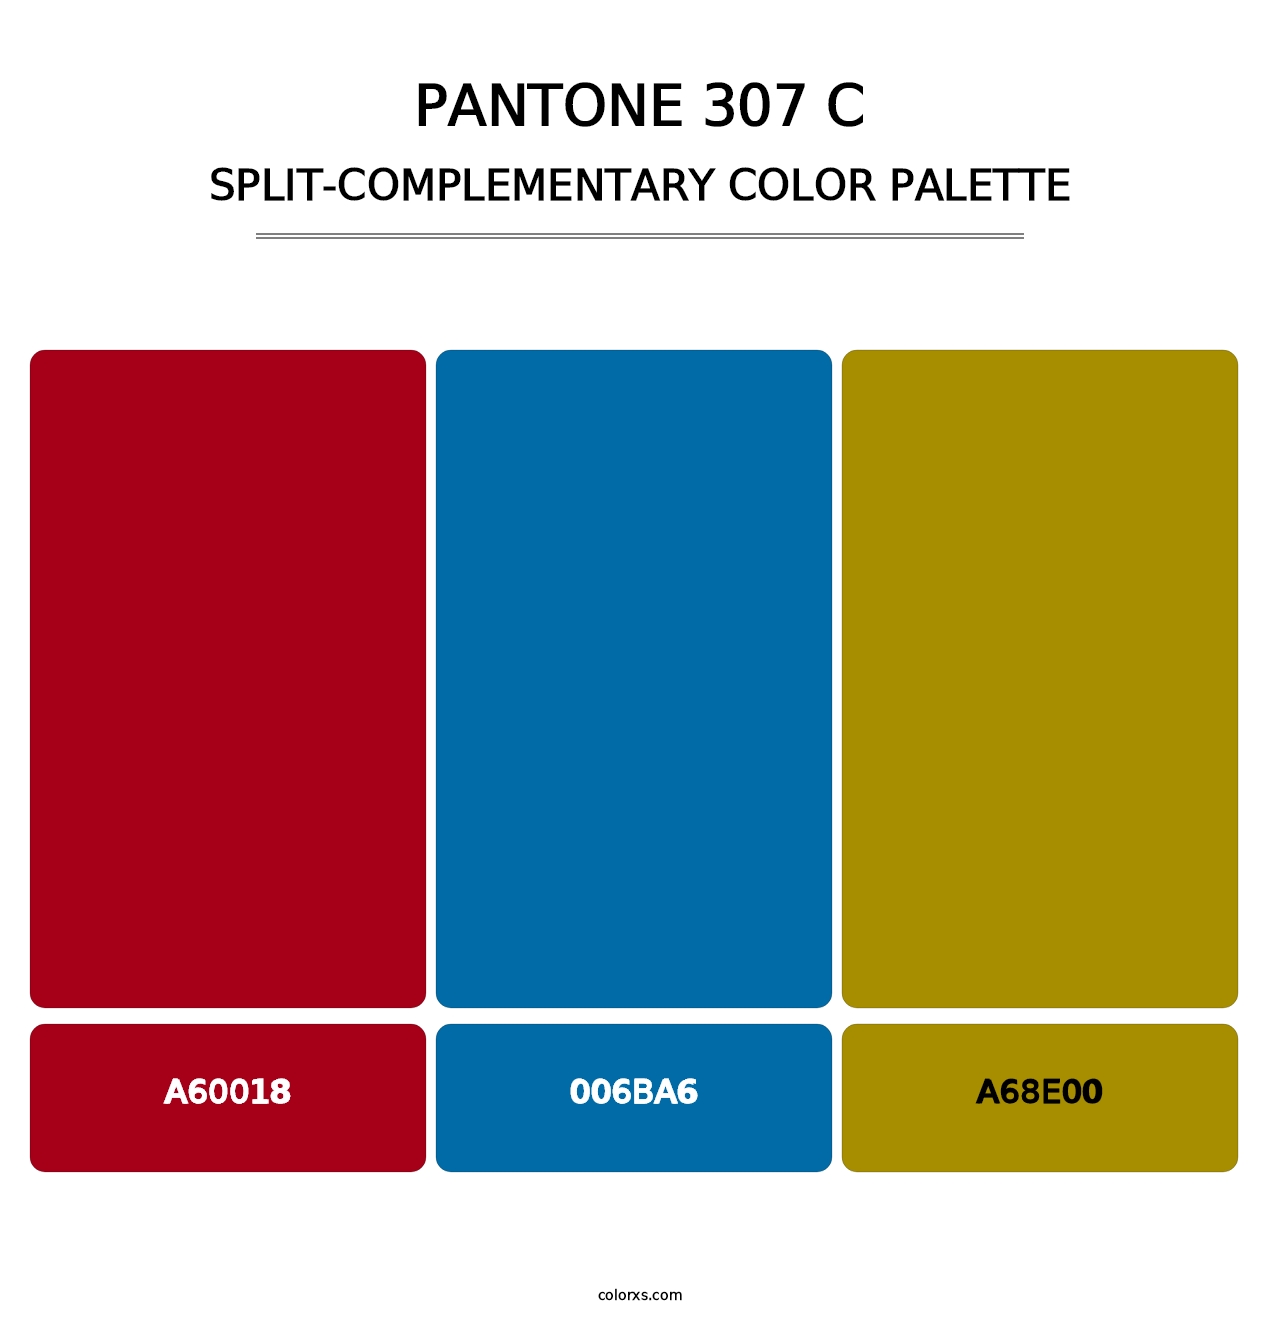 PANTONE 307 C - Split-Complementary Color Palette